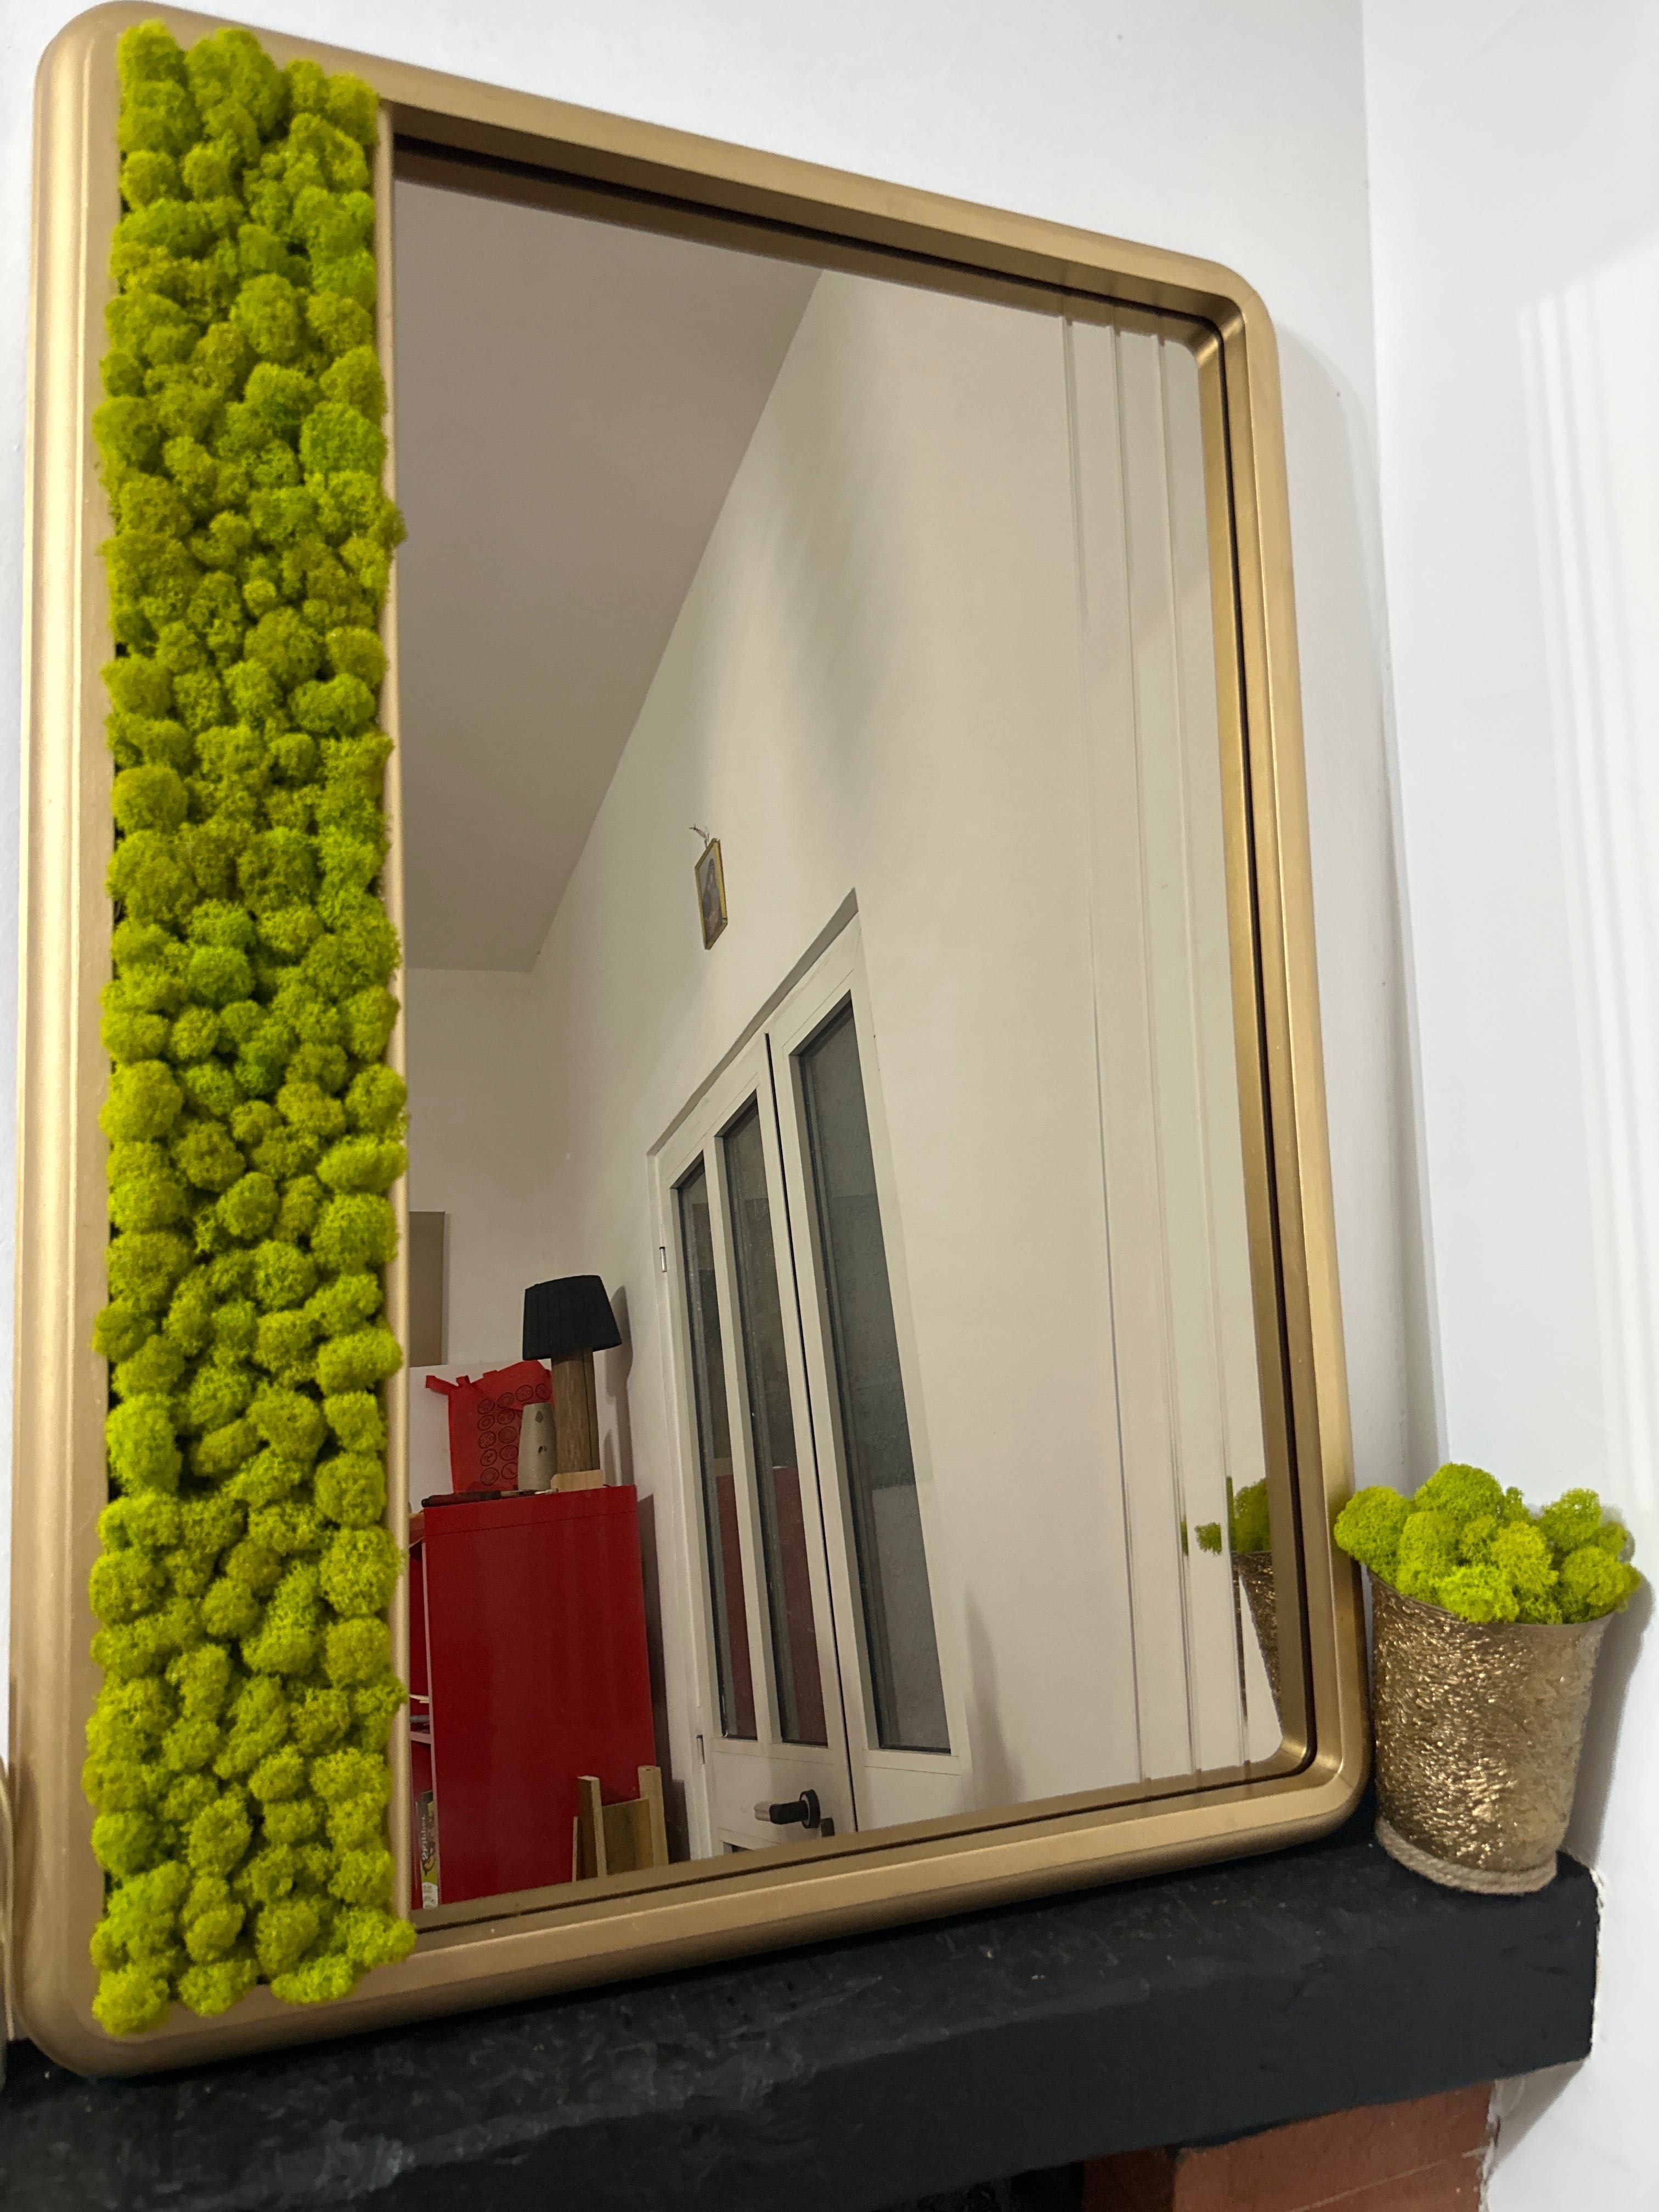 Oglinda de perete cu muschi verde naturali